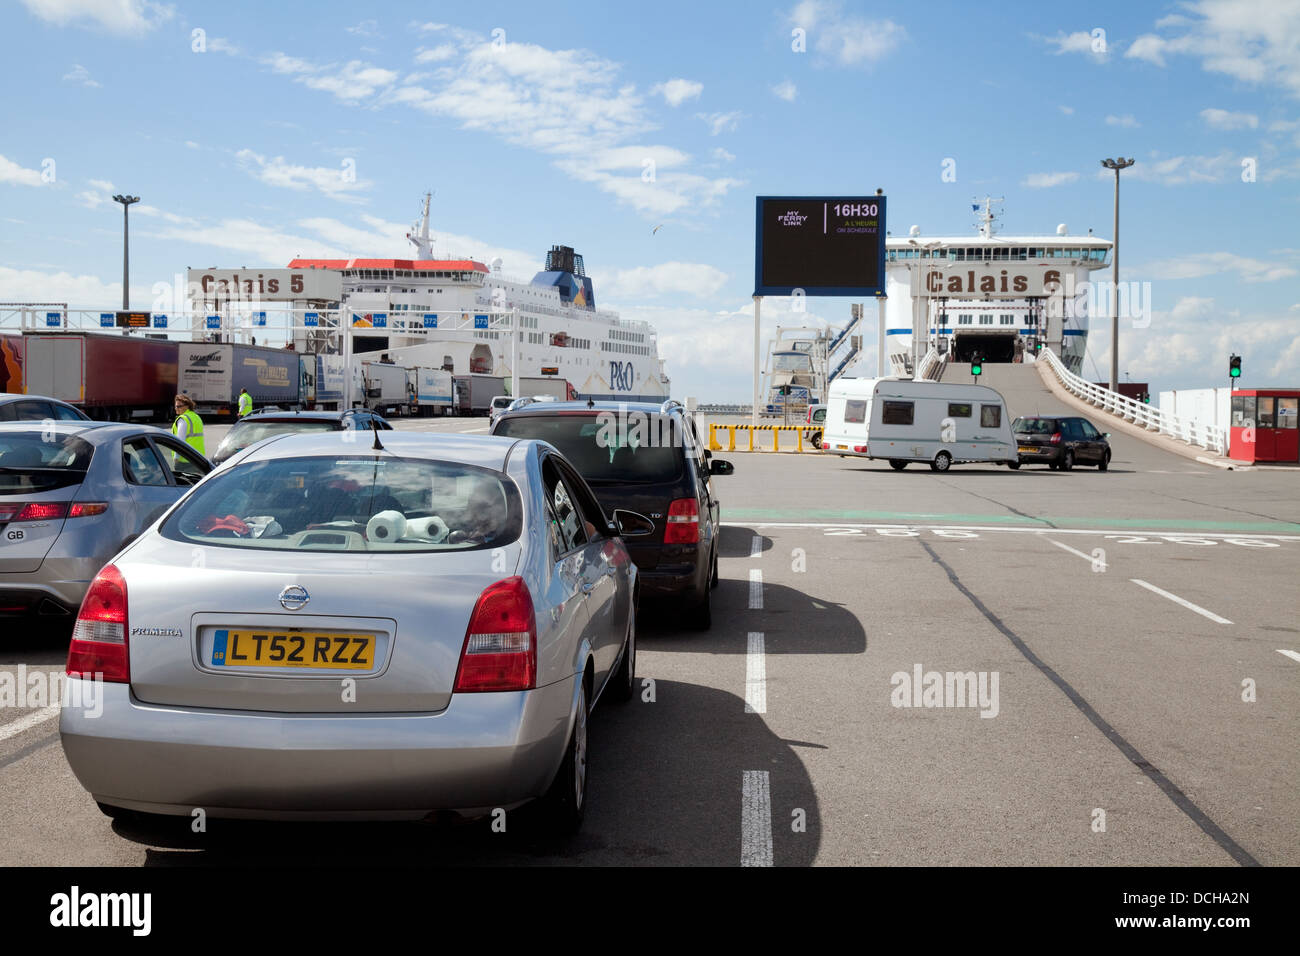 Voitures à bord d'un car-ferry bateau pour la traversée de la manche à Douvres Calais, route de Calais docks, France, Europe Banque D'Images